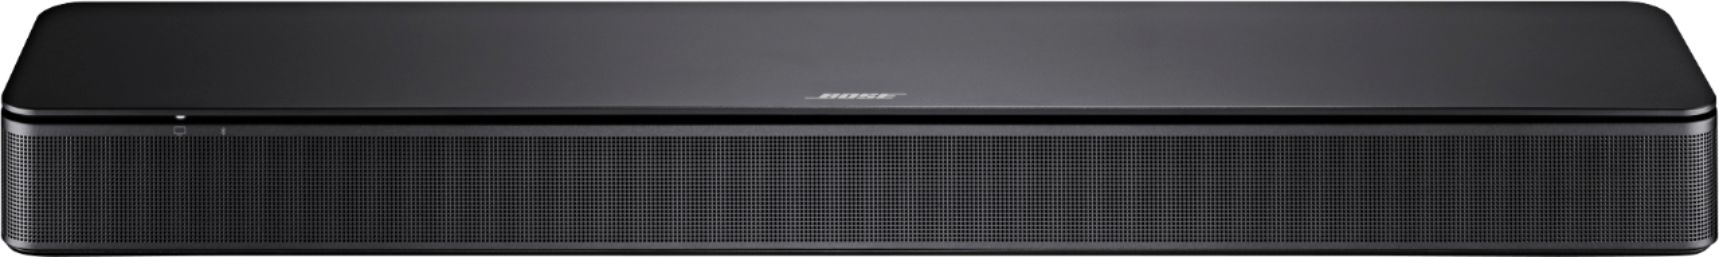 オーディオ機器 スピーカー Bose TV Speaker Bluetooth Soundbar Black 838309-1100 - Best Buy